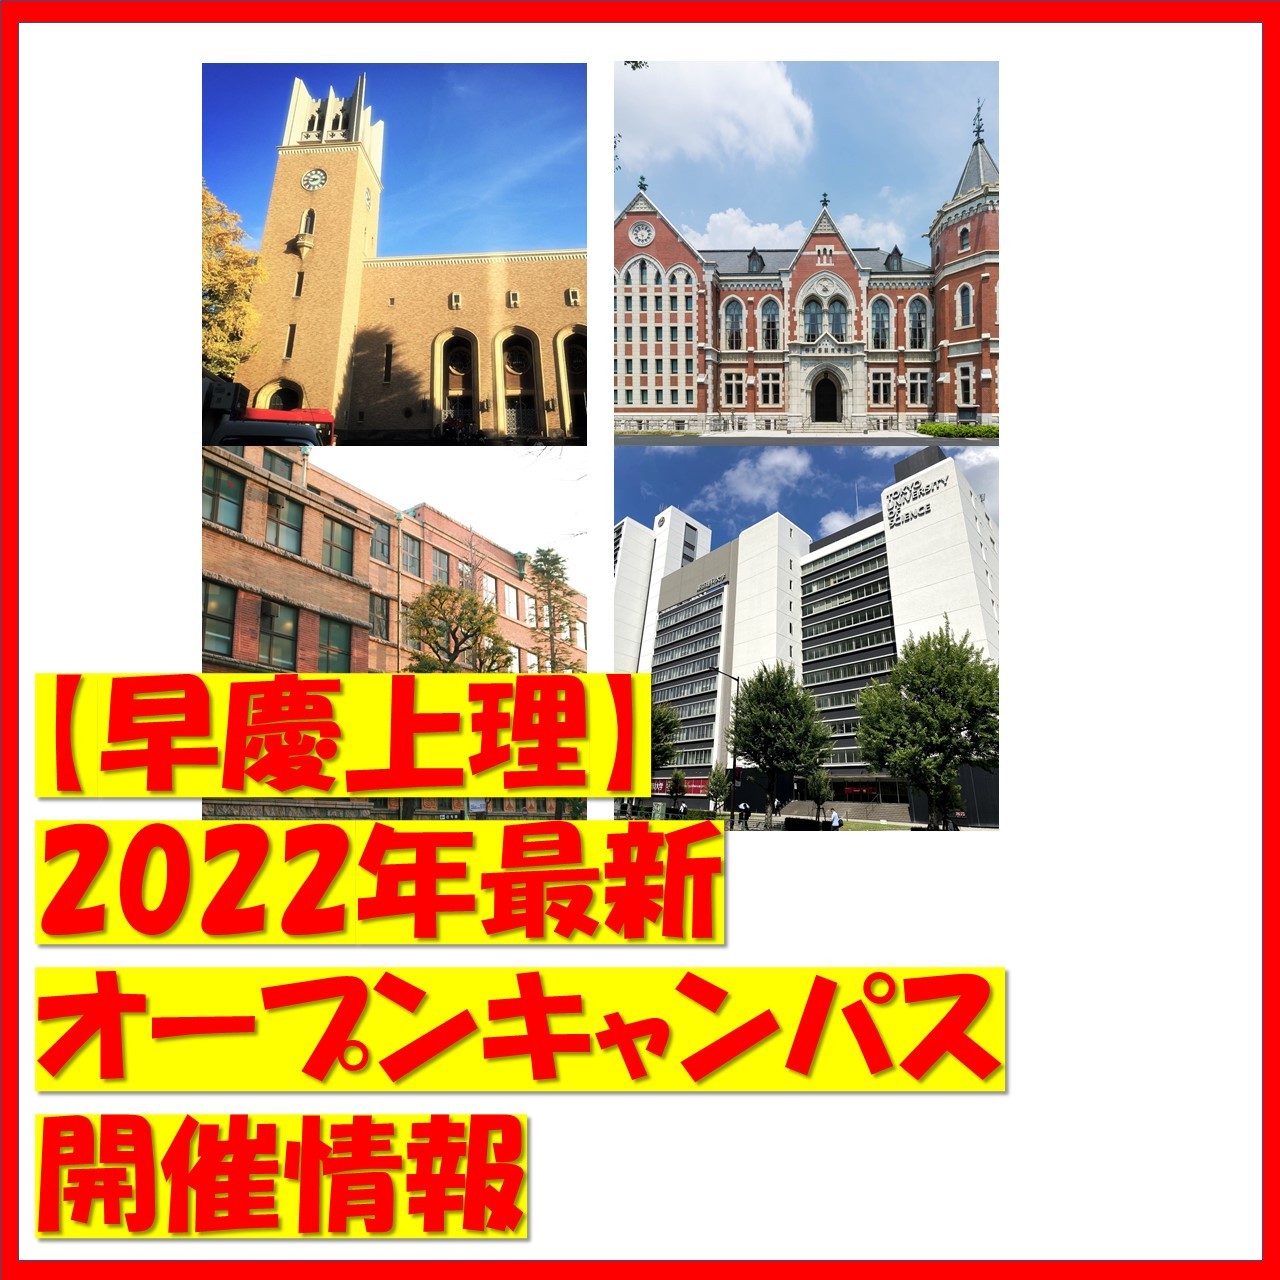 【早慶上理】2022年最新オープンキャンパス開催情報